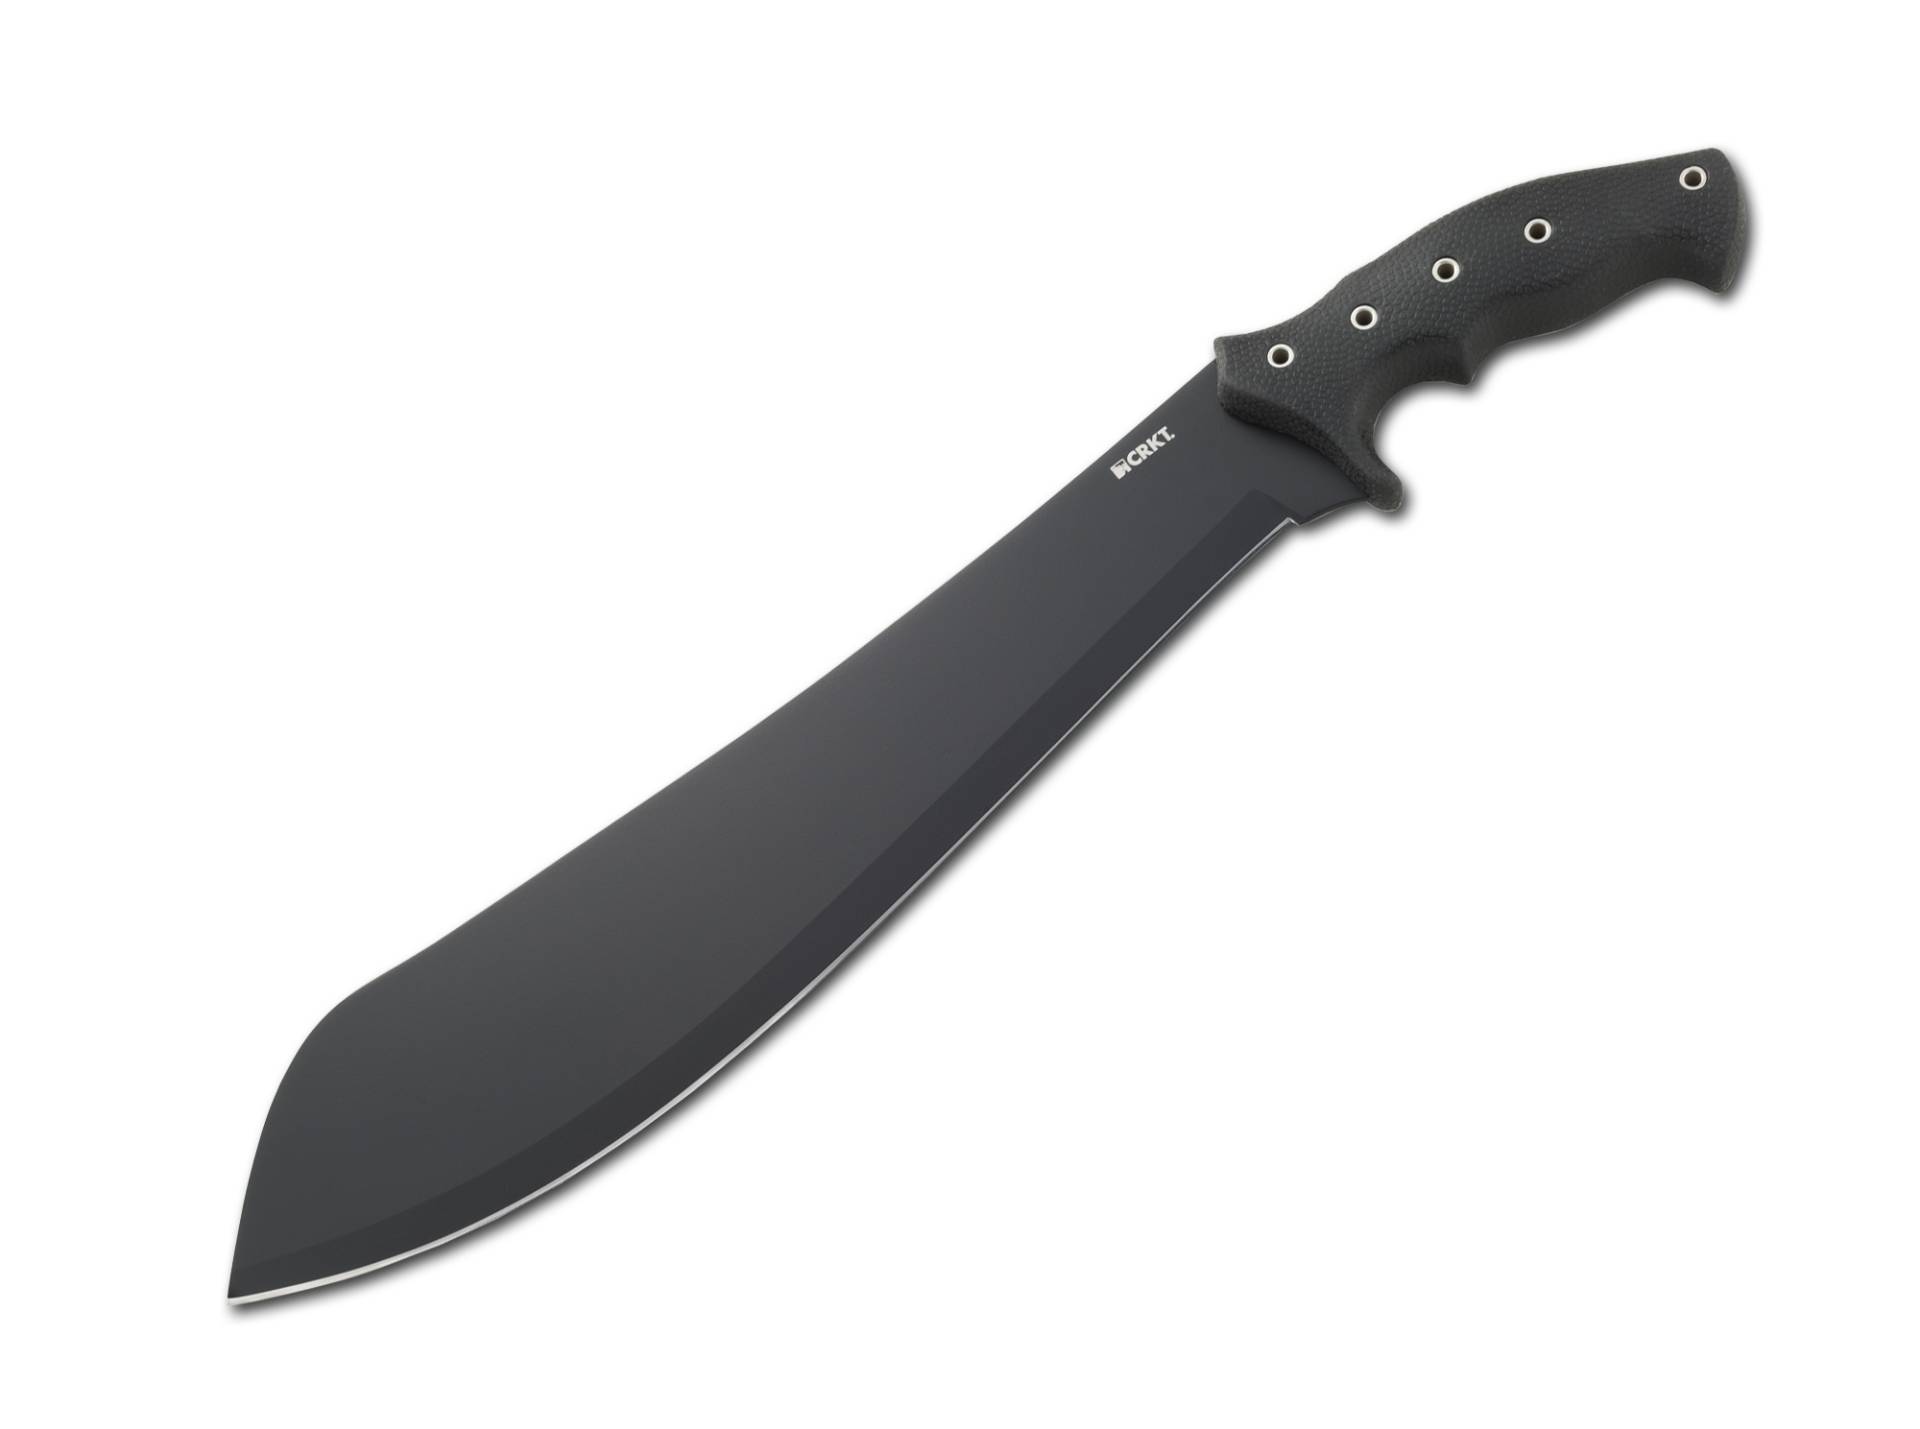 Halfachance Parang Machete-Messer von CRKT